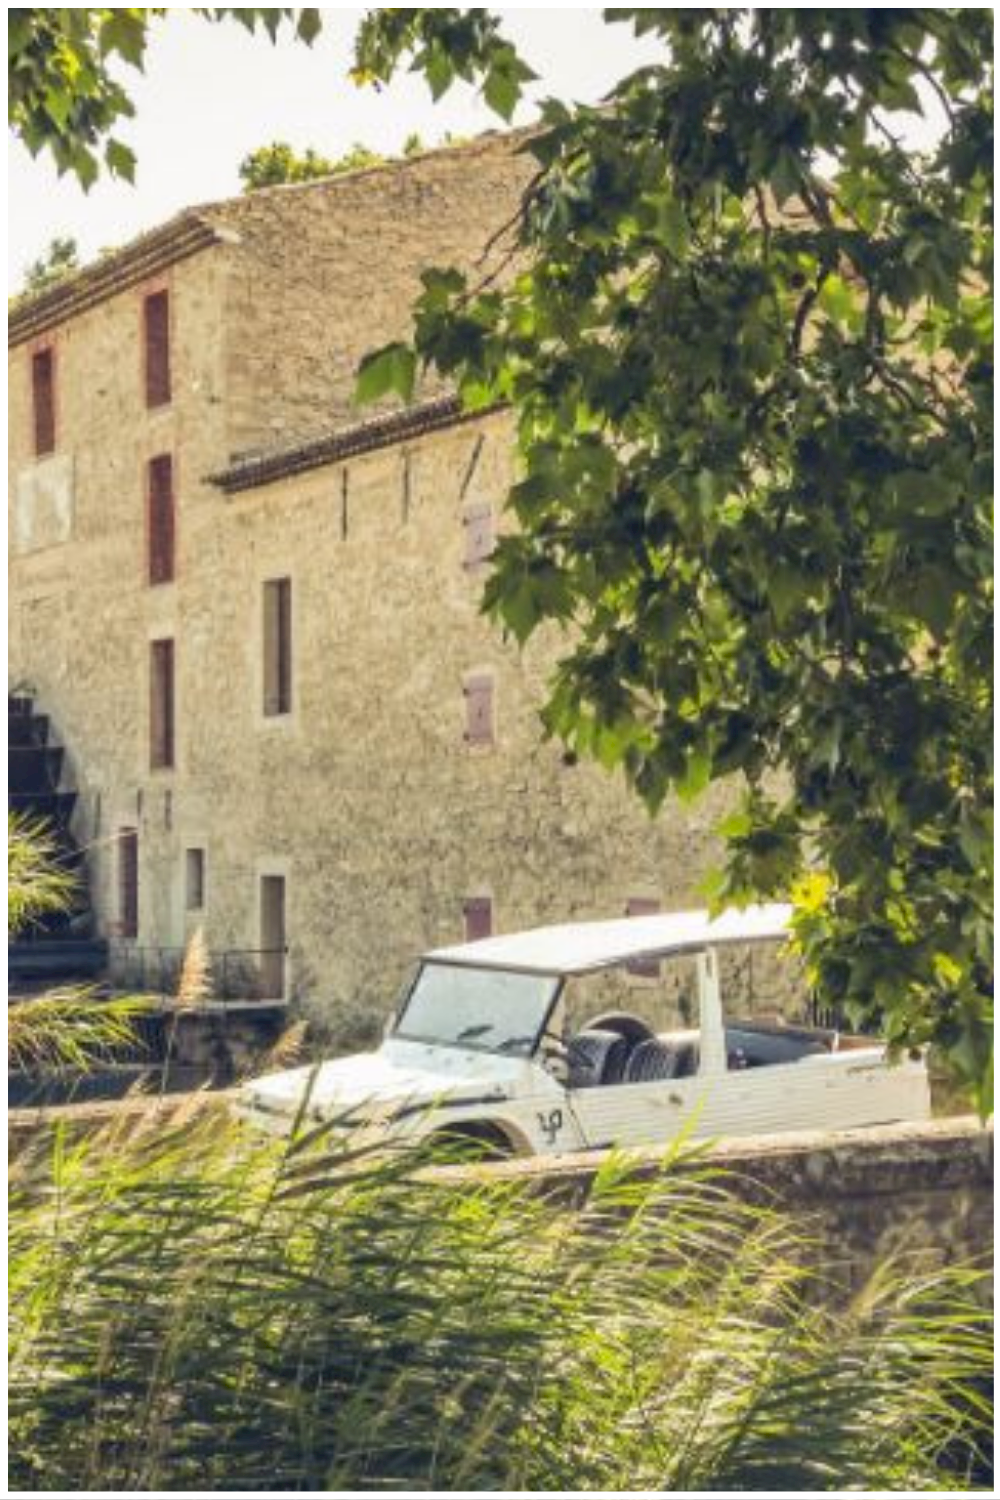 Location de voitures vintage en Provence